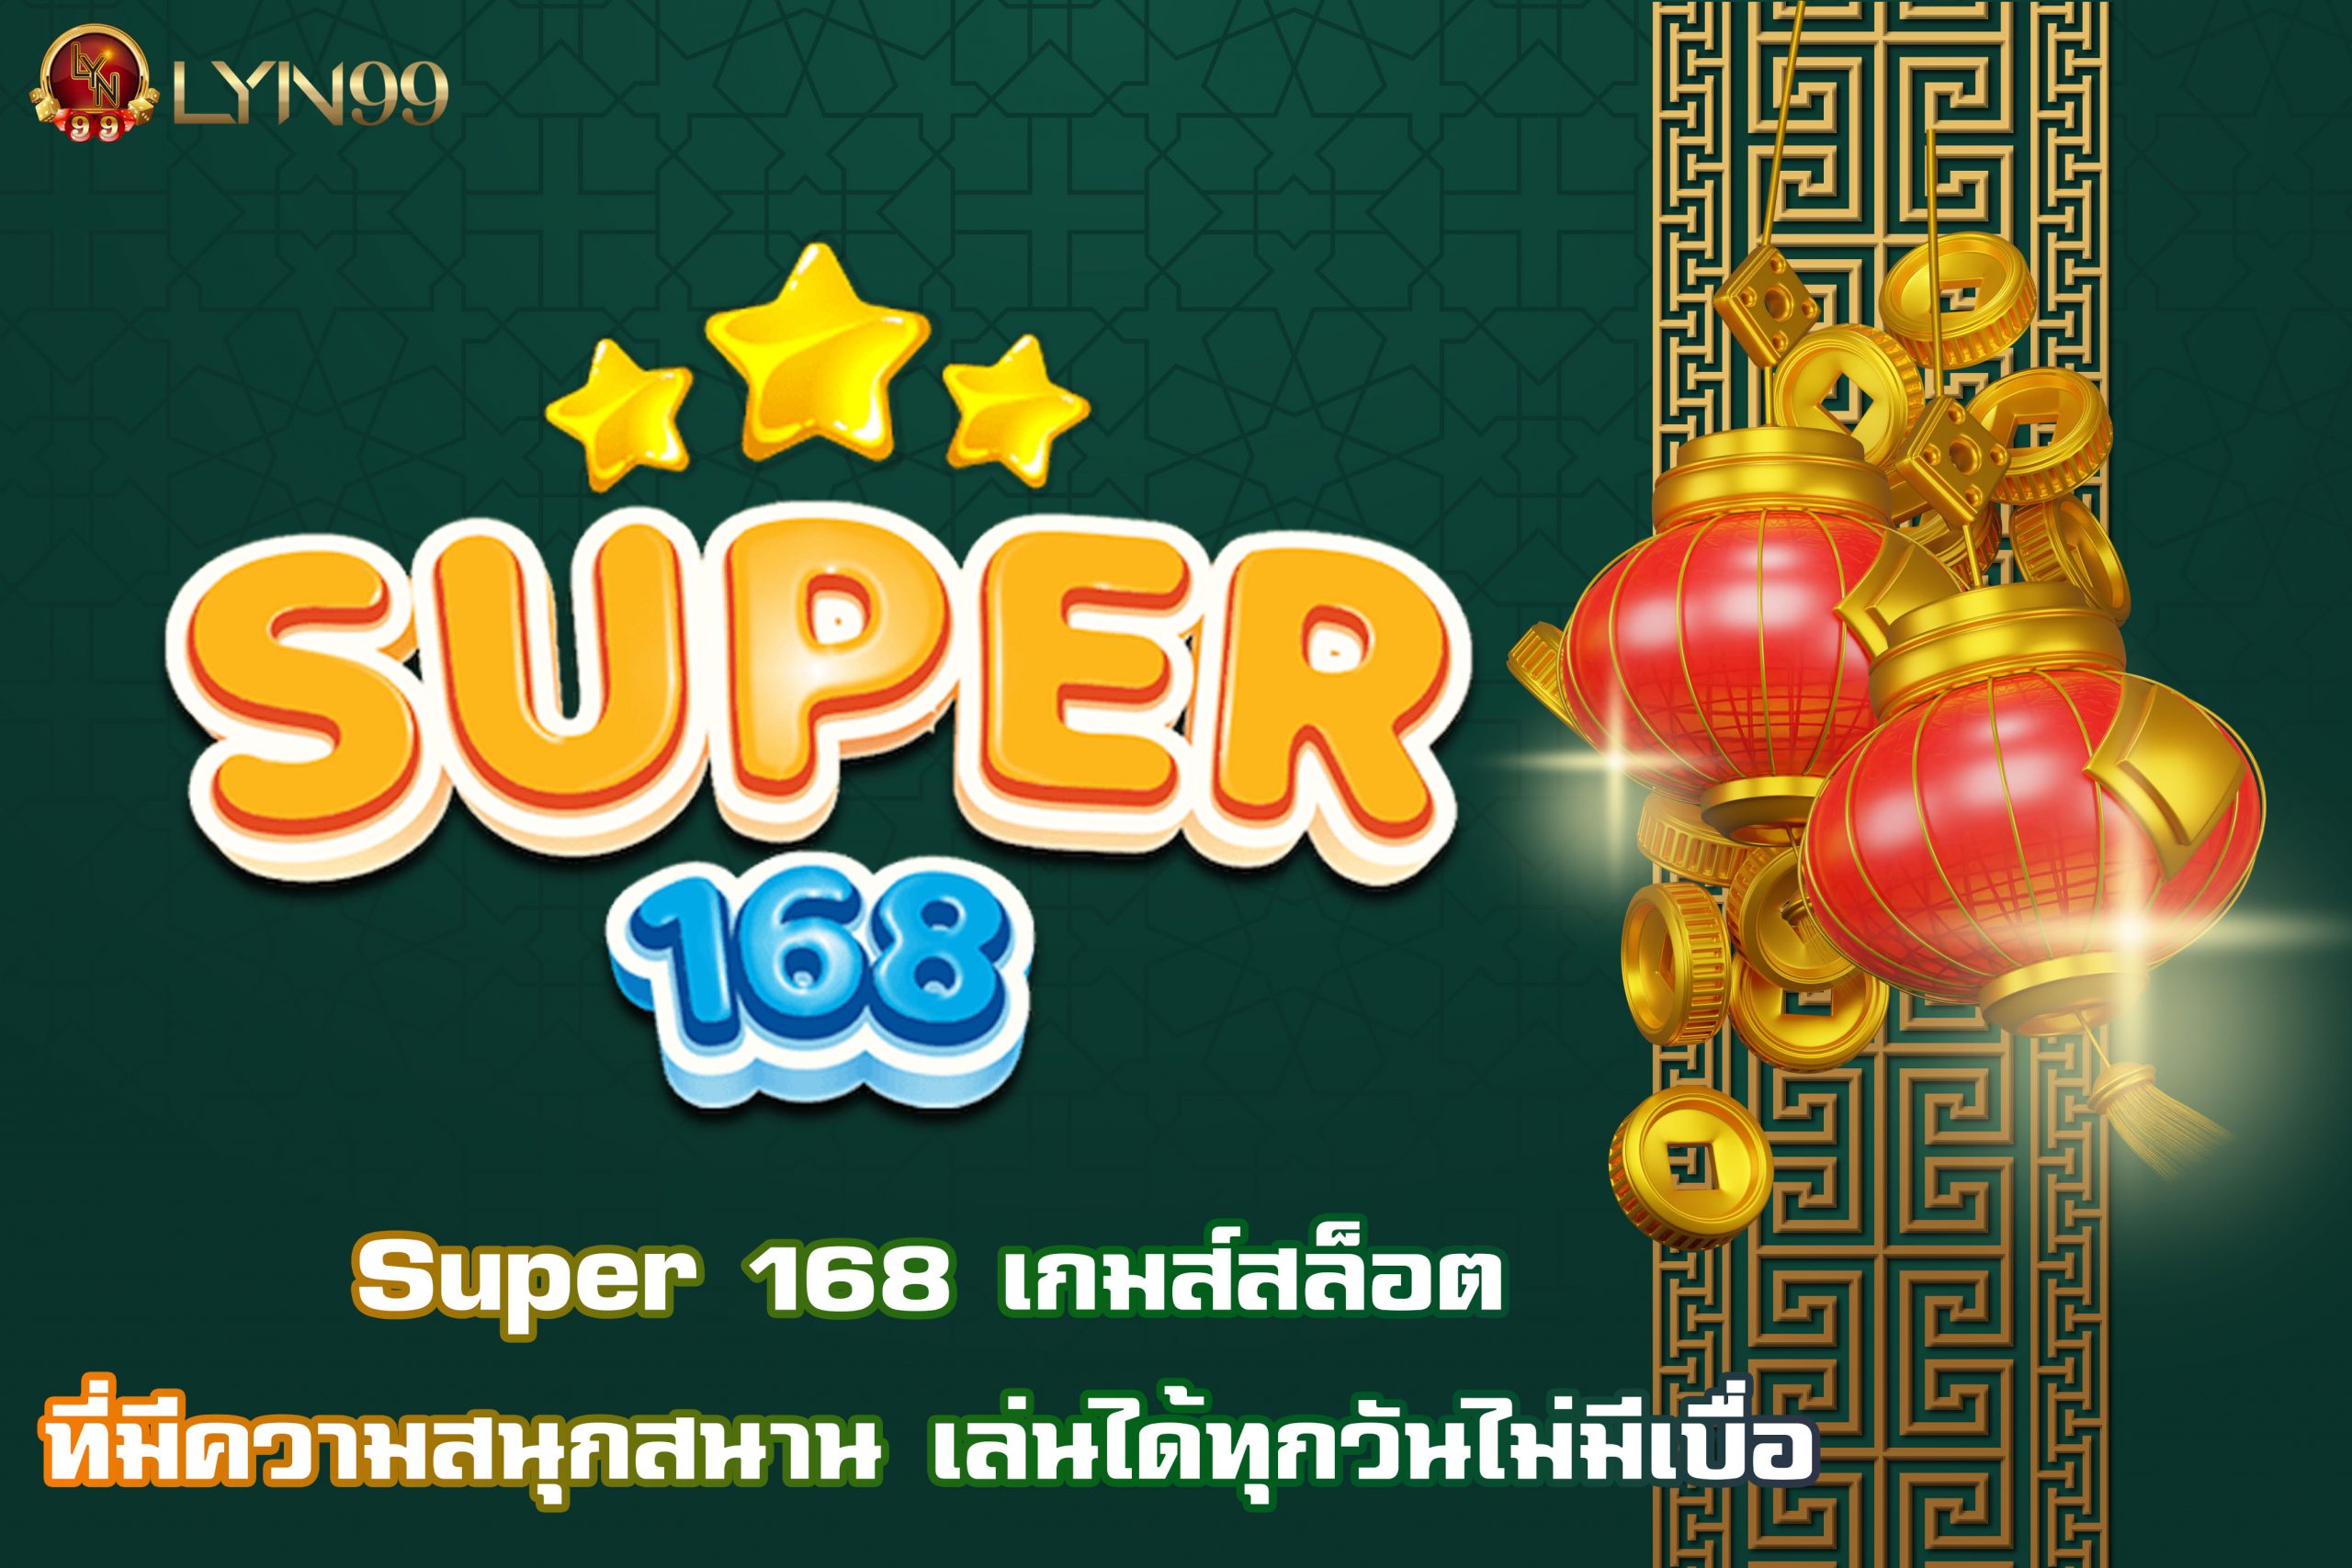 Super 168